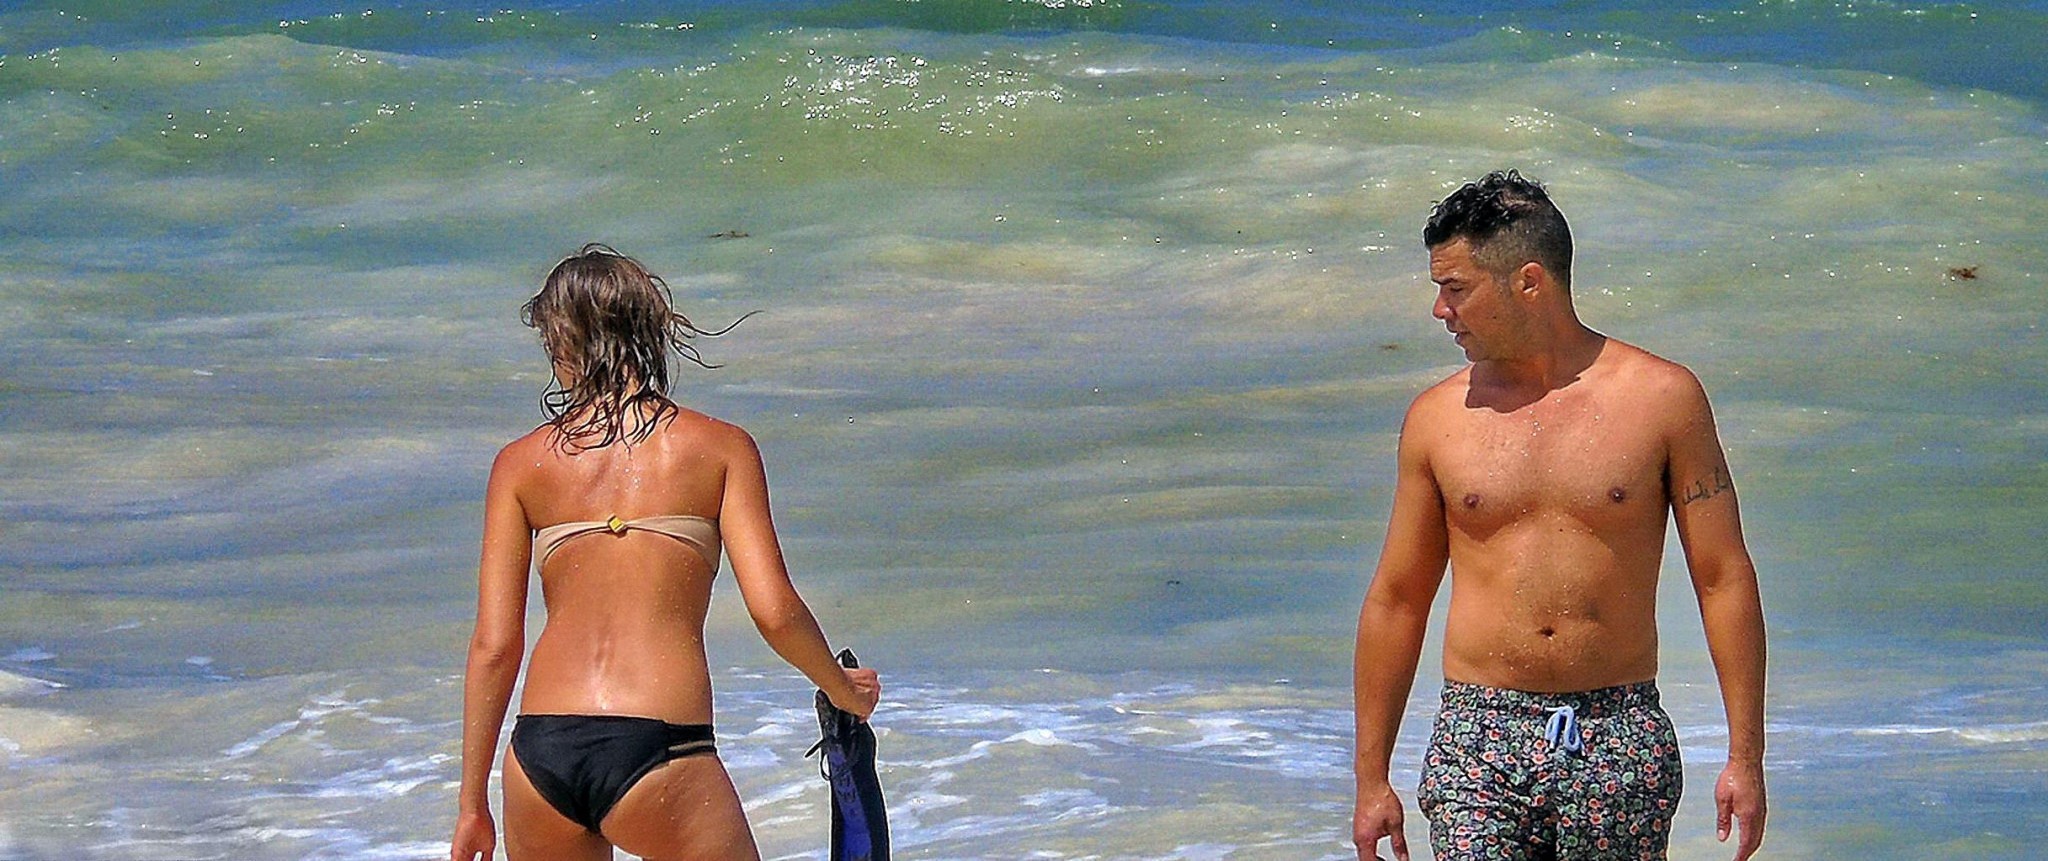 Jessica alba indossa un bikini senza spalline su una spiaggia in Messico
 #75191652